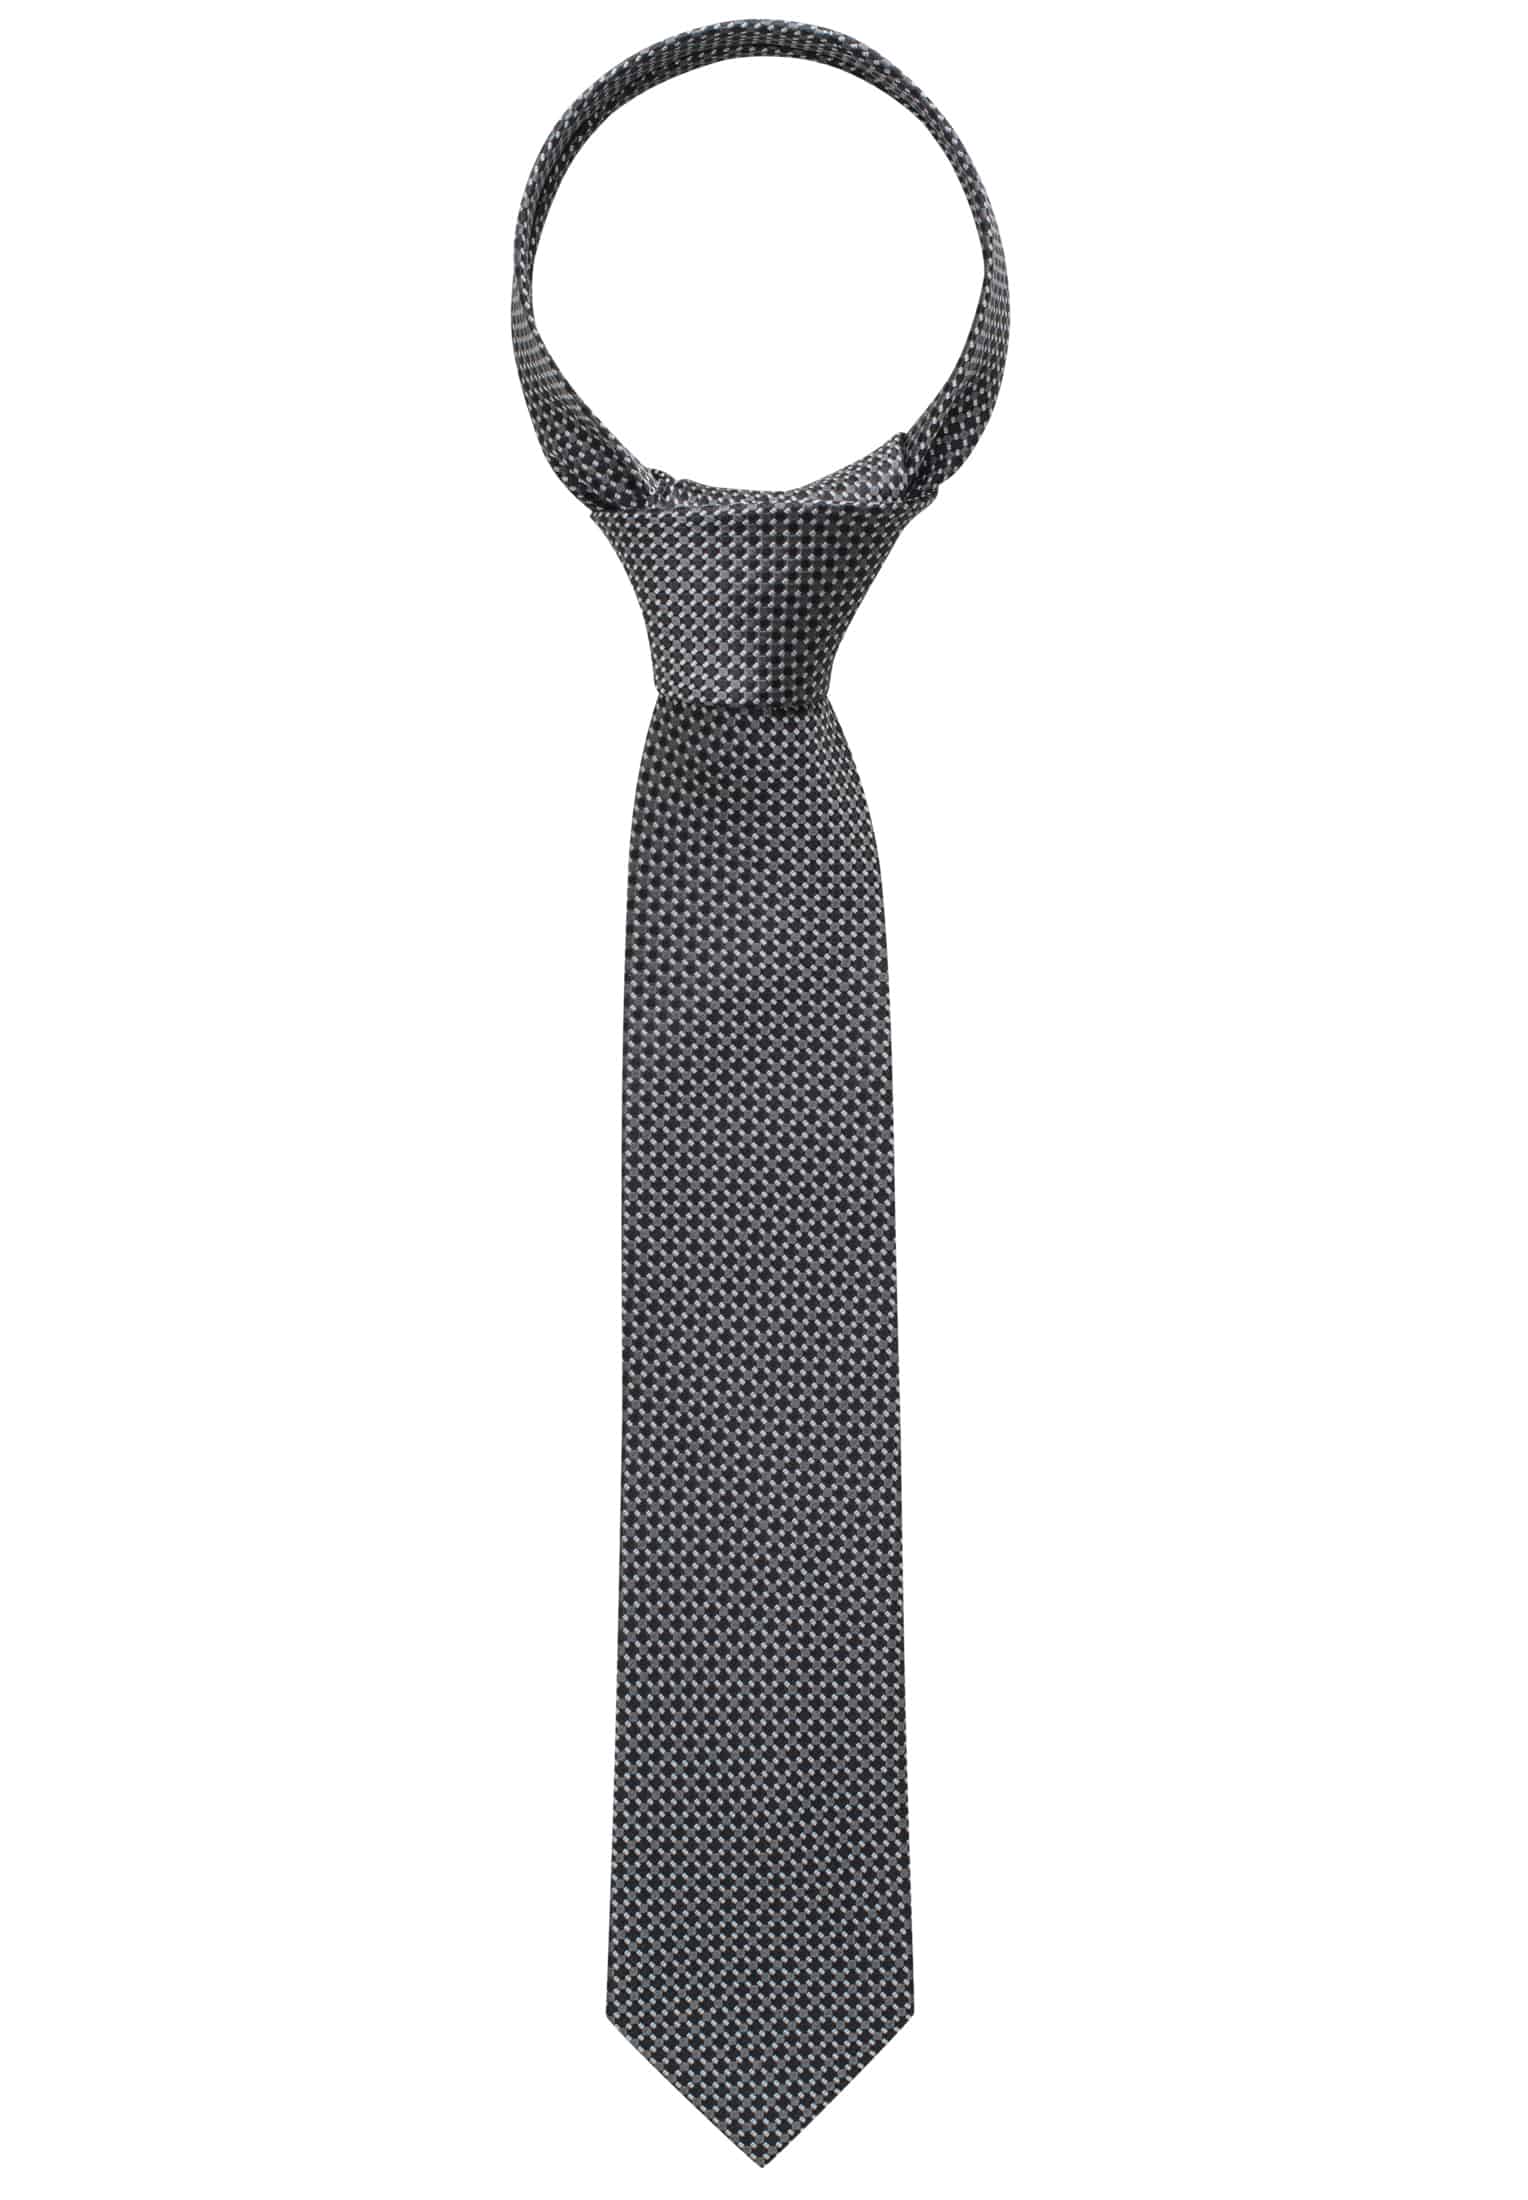 Krawatte in schwarz strukturiert | 1AC00407-03-91-142 schwarz | | 142